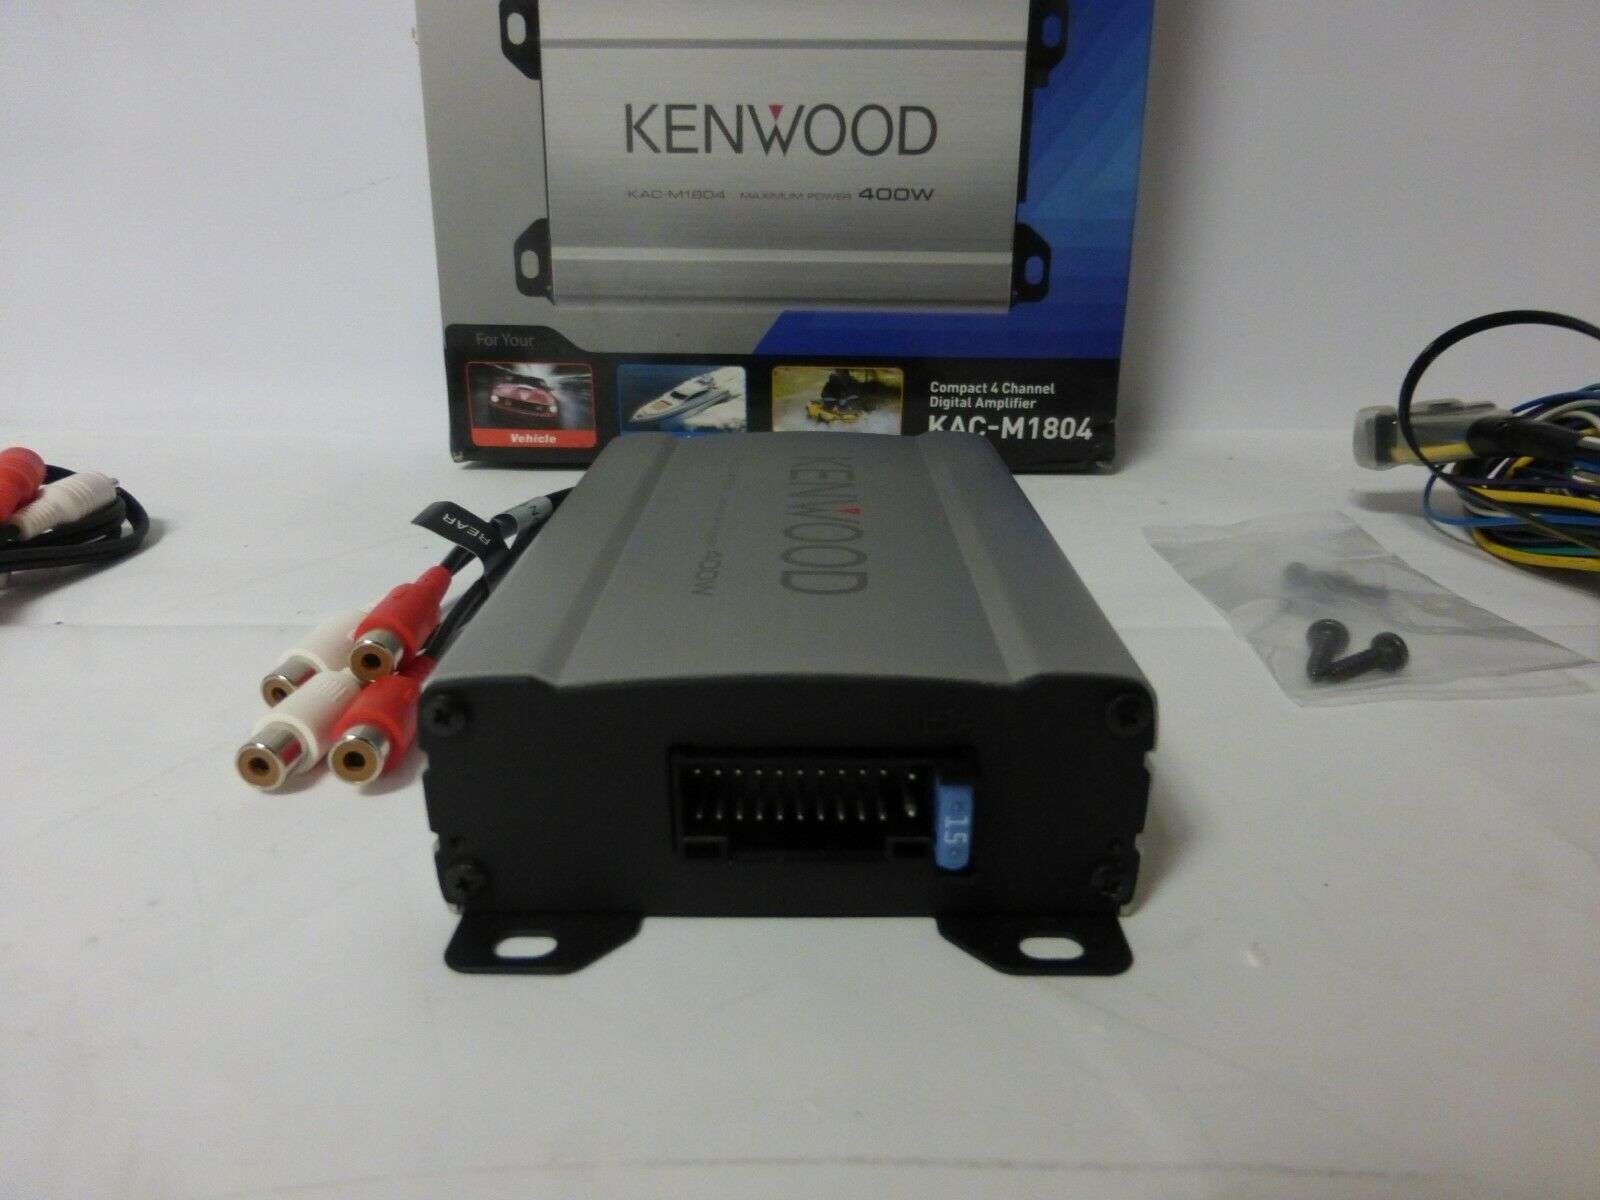 Kenwood KAC-M1804 Review